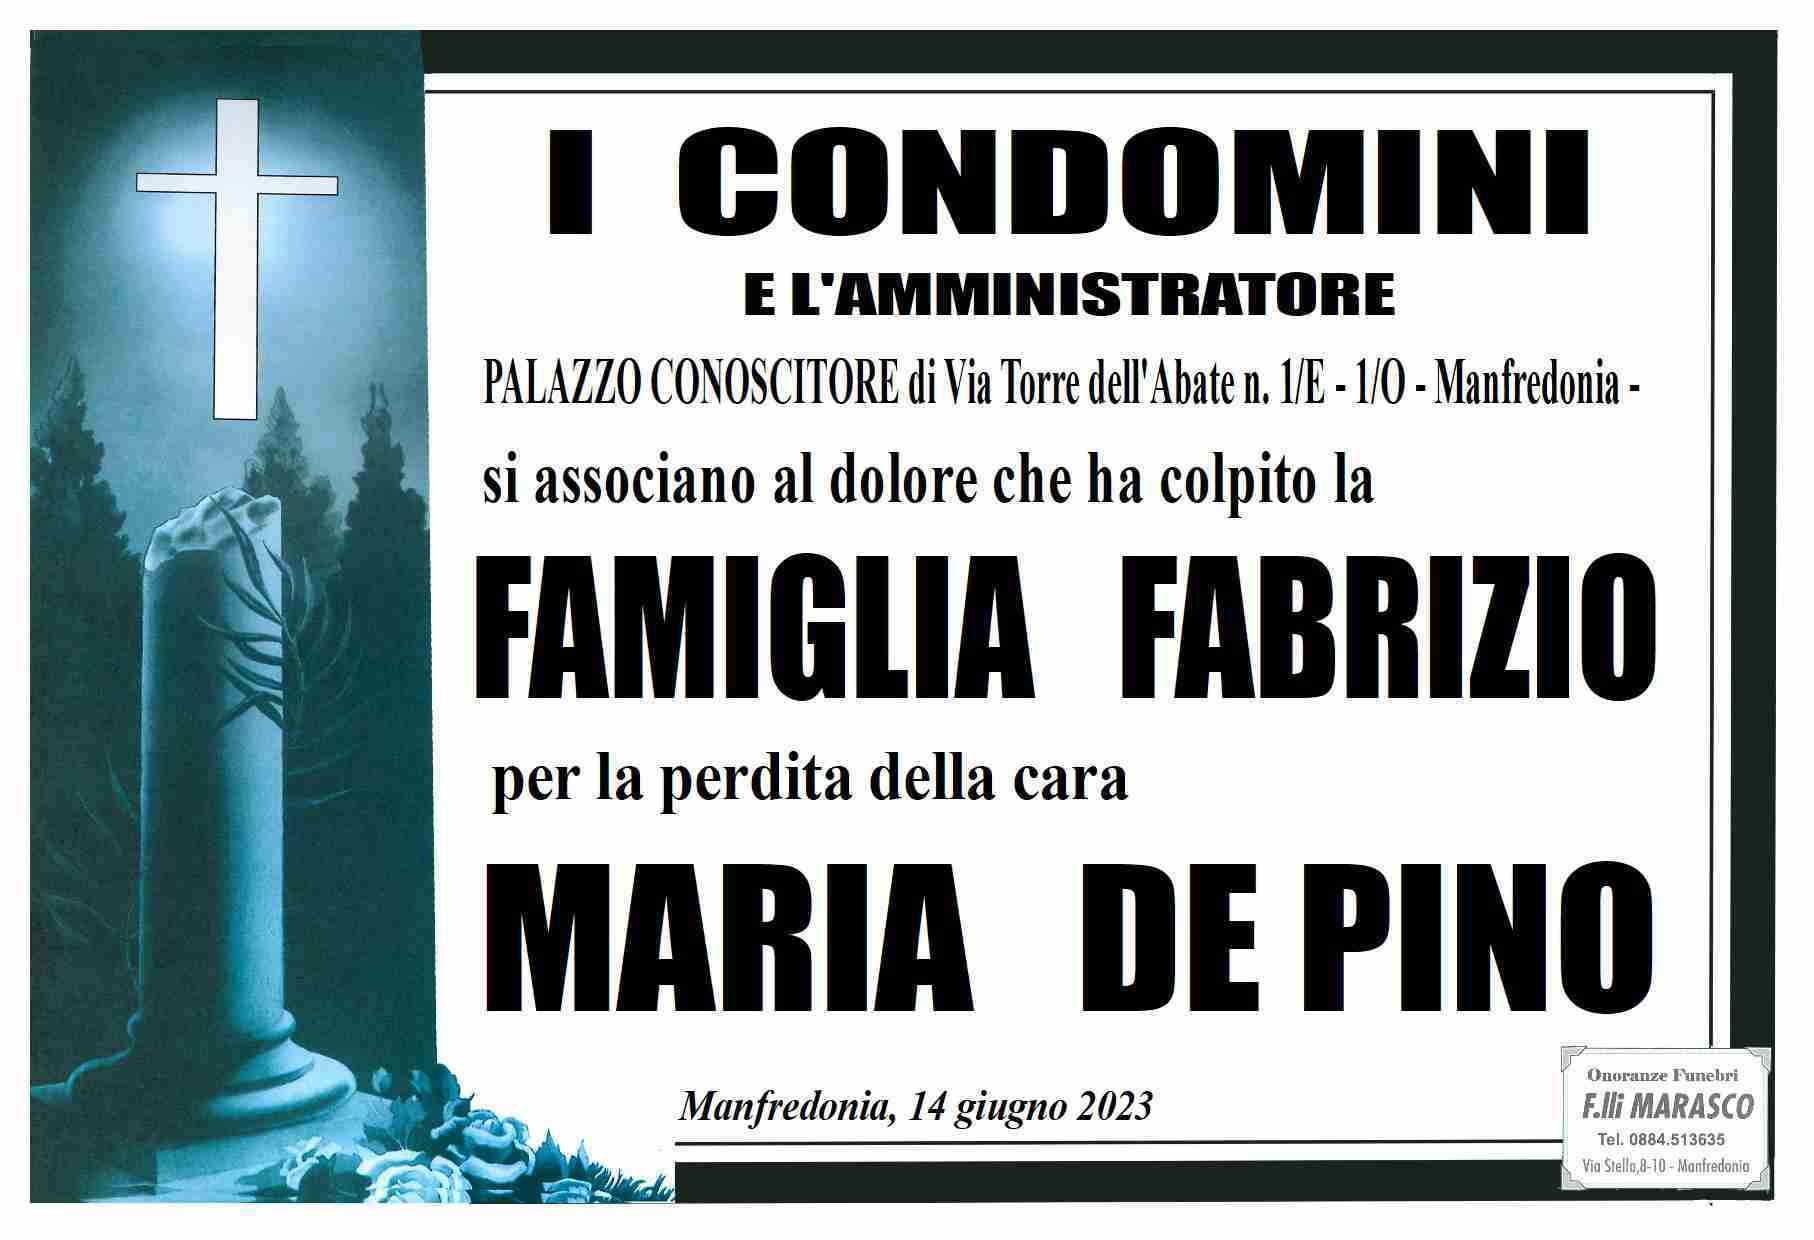 Maria De Pino in Fabrizio